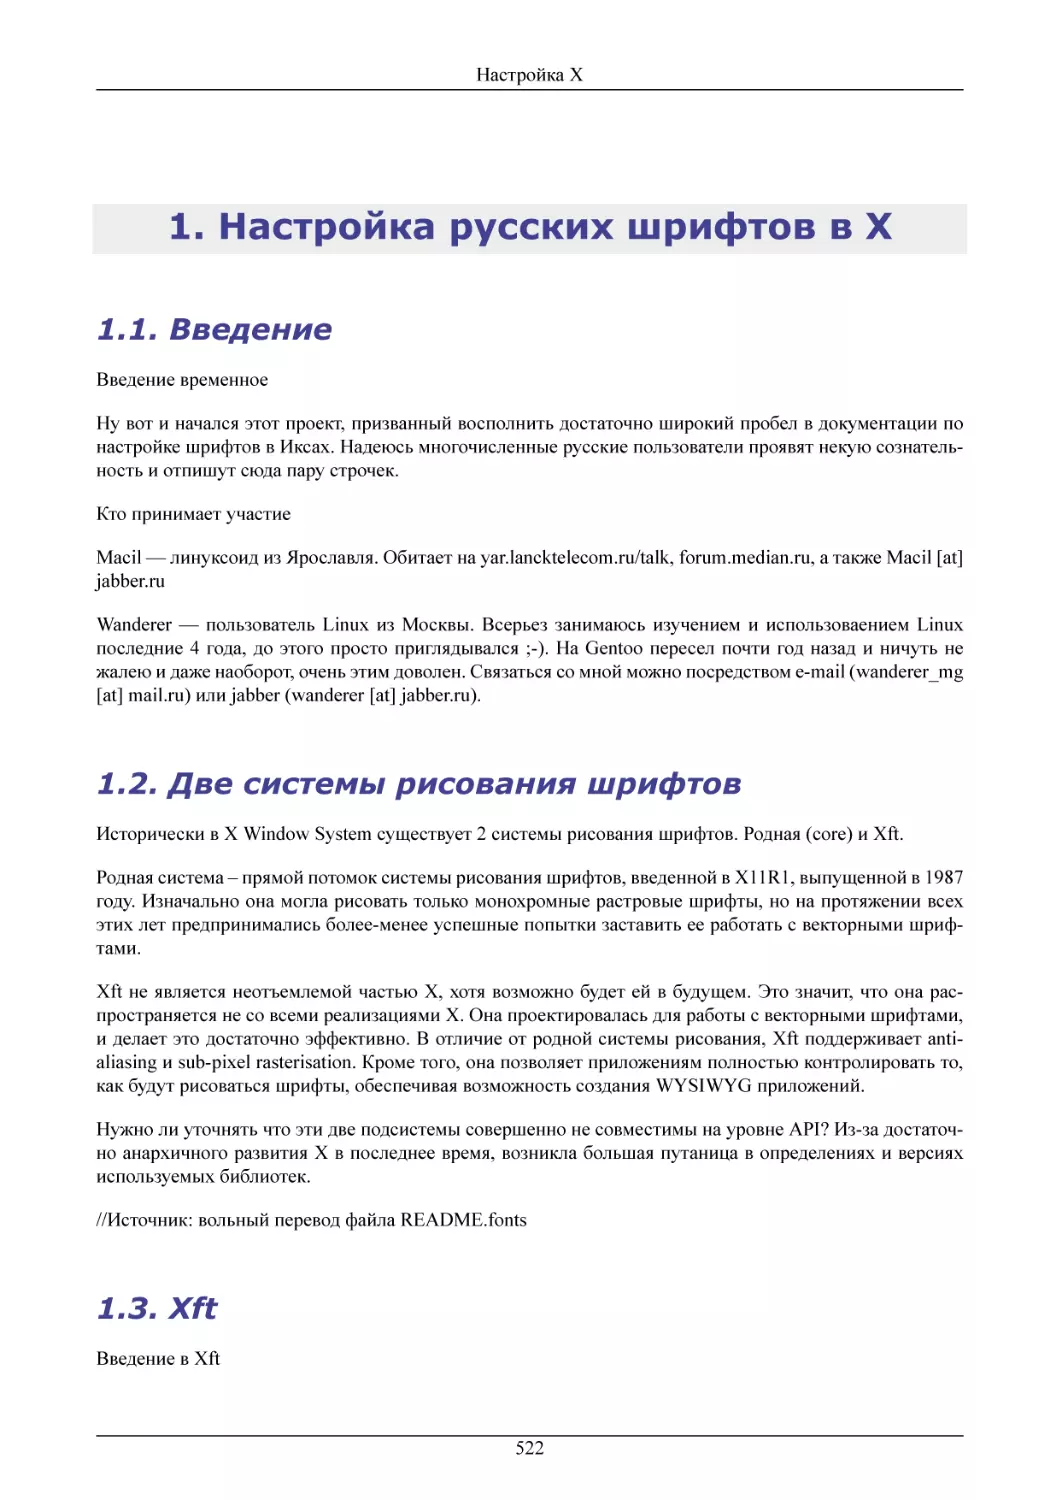 Настройка русских шрифтов в X
Введение
Две системы рисования шрифтов
Хft